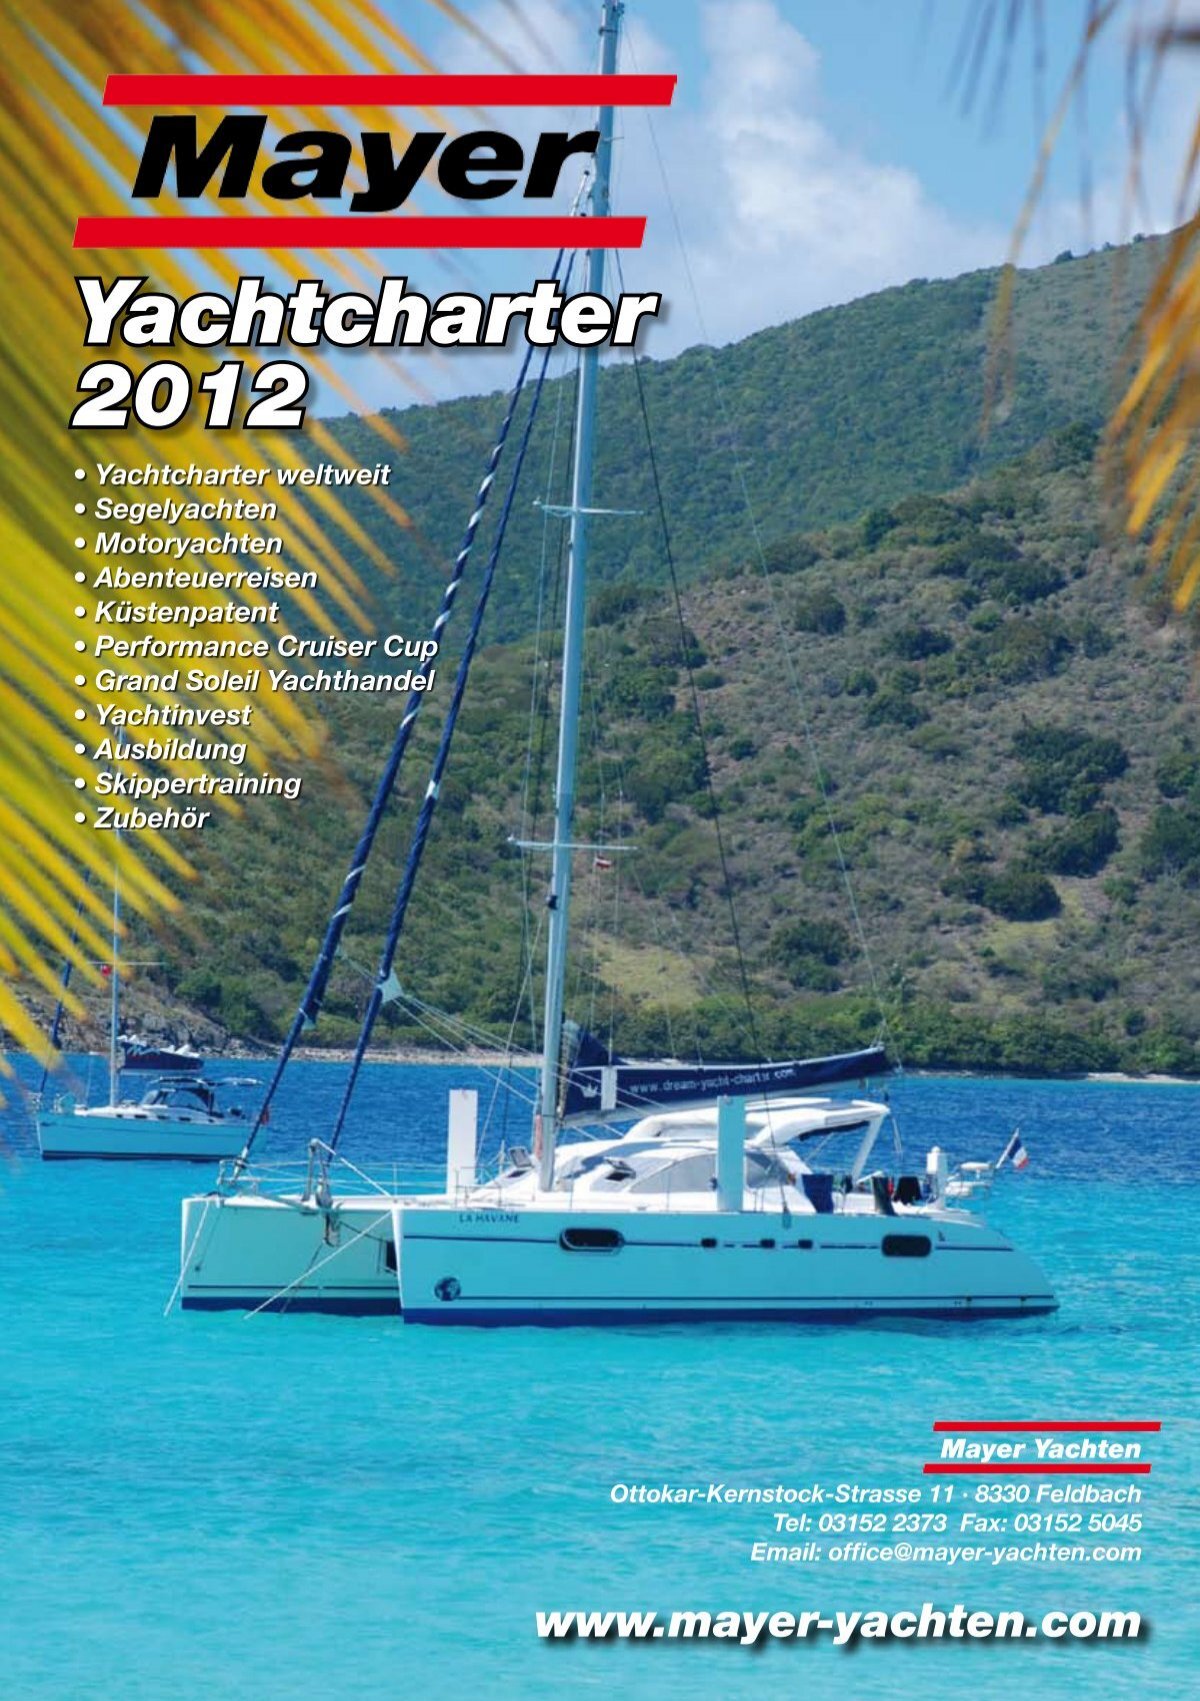 mayer yachten charter